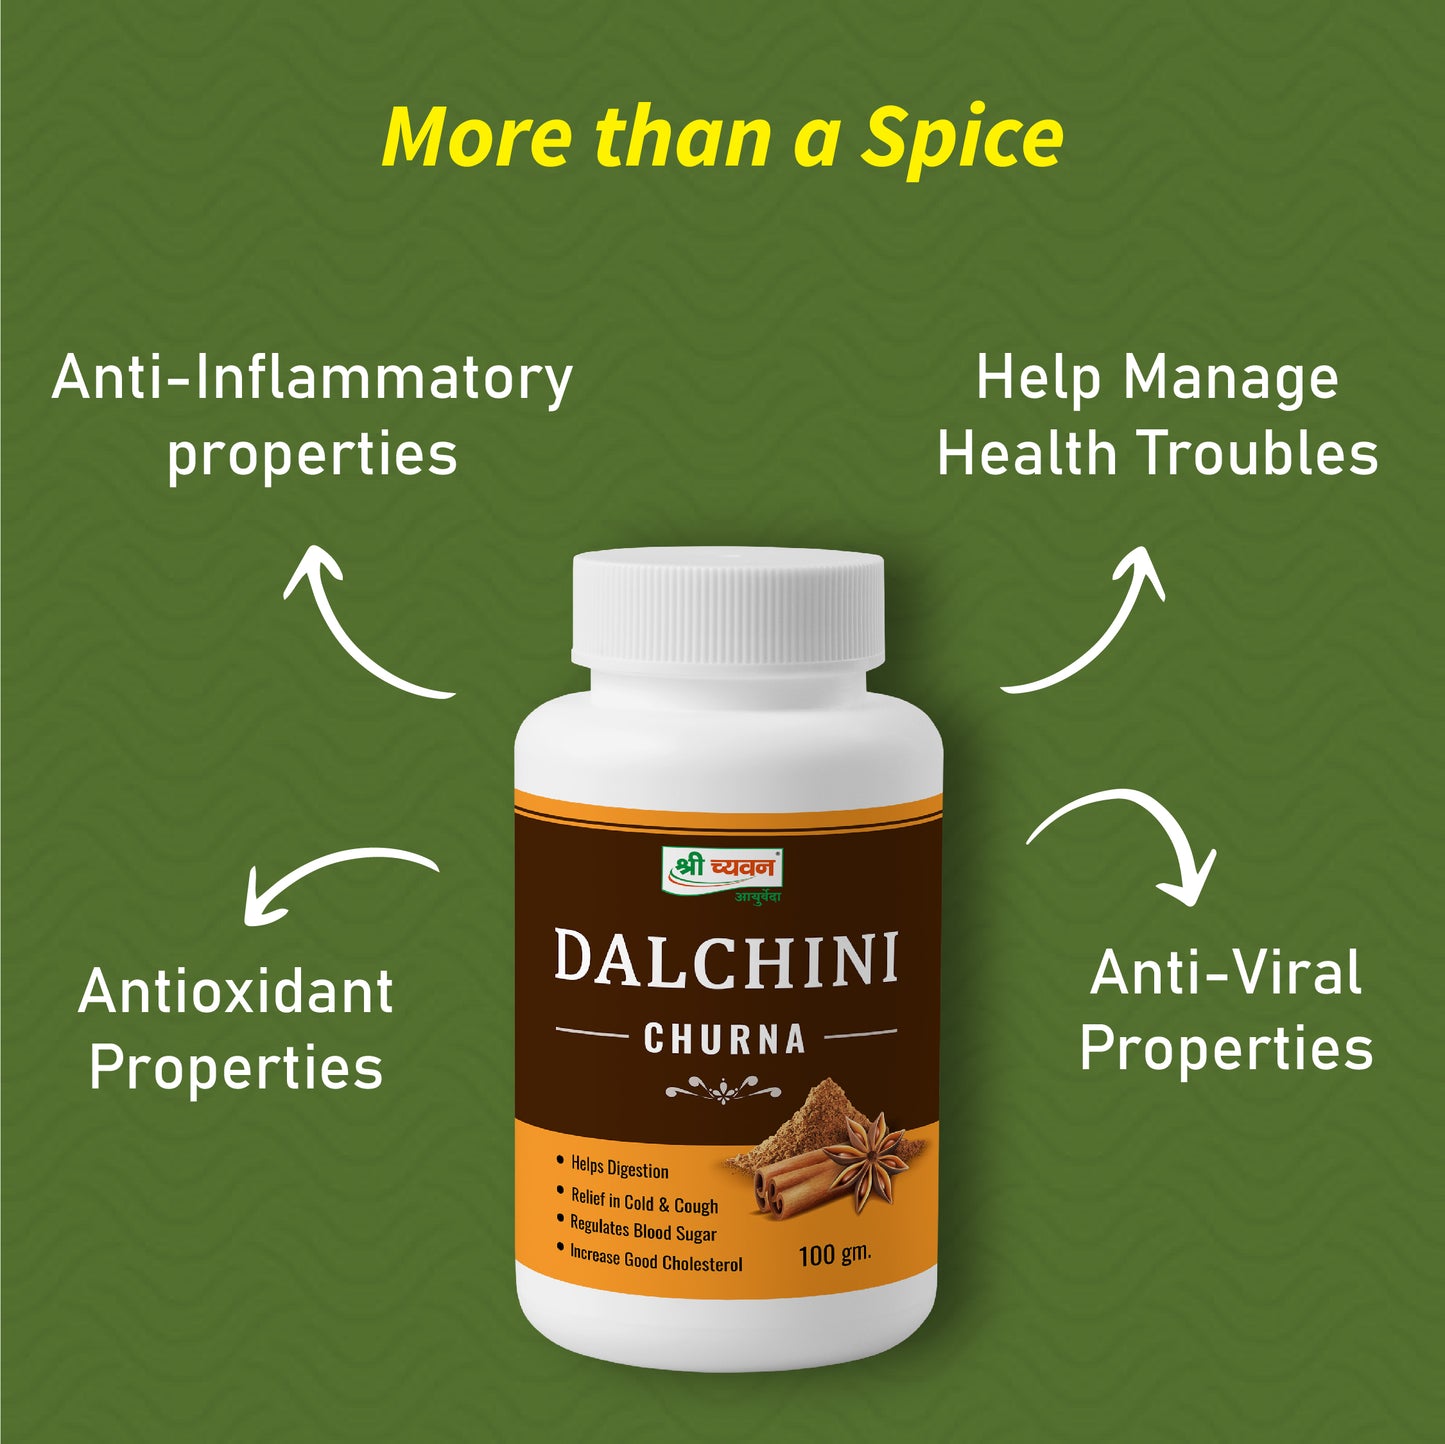 Dalchini Churna Benefits